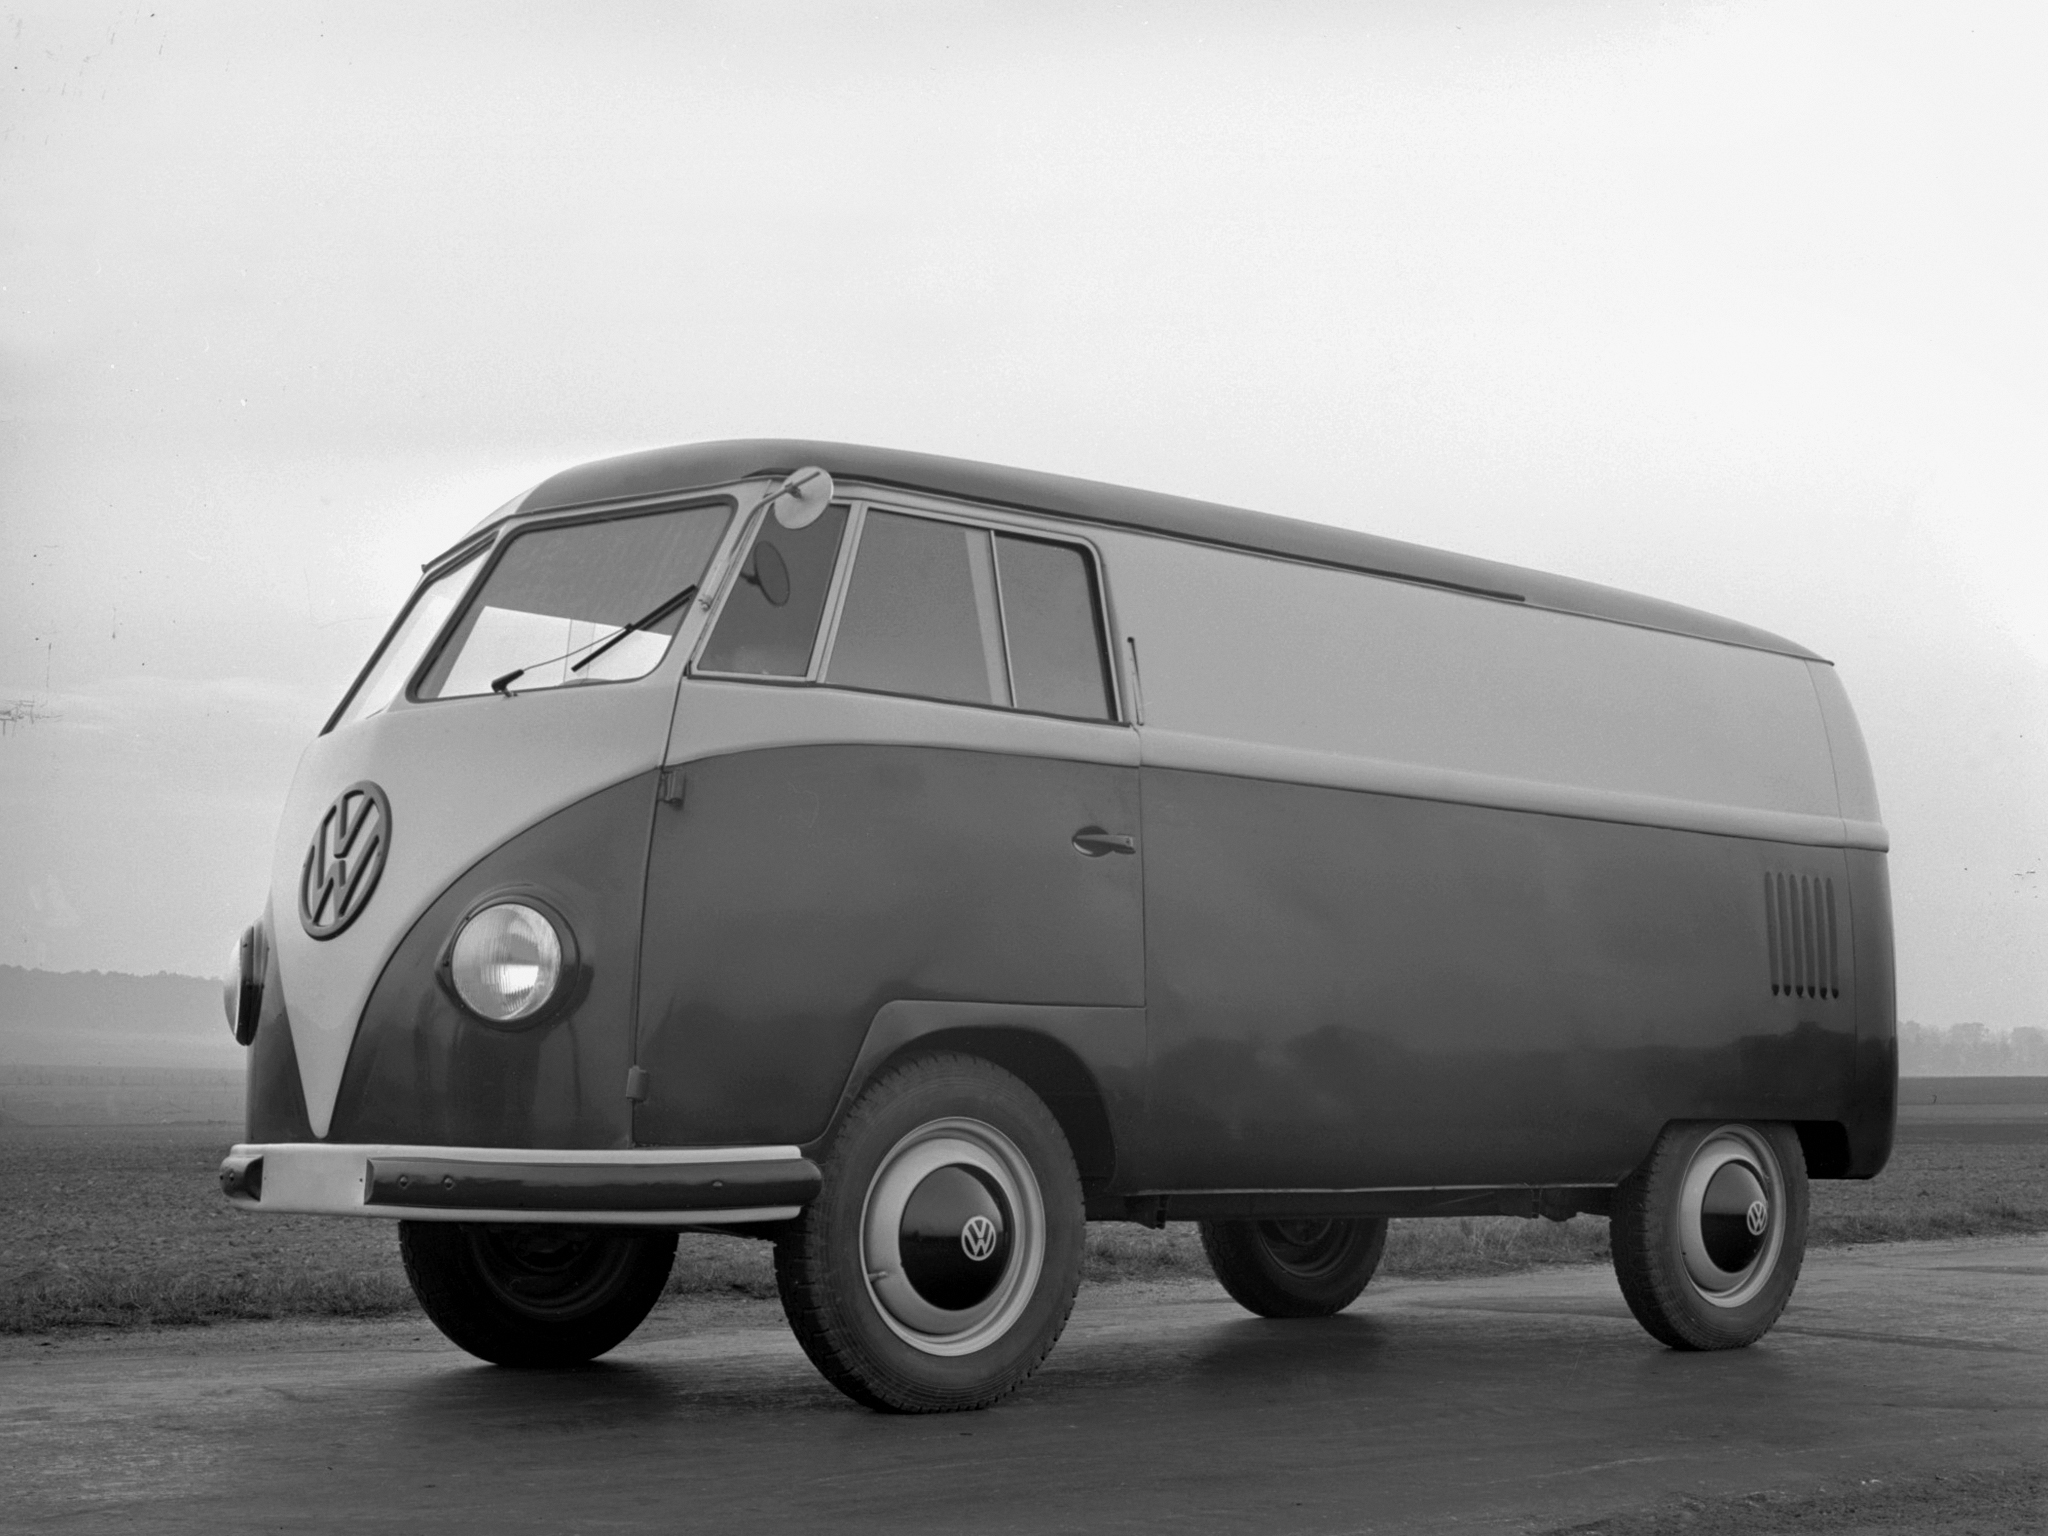 VW Transporter ma 70 lat. Po drodze było 6 generacji i 1